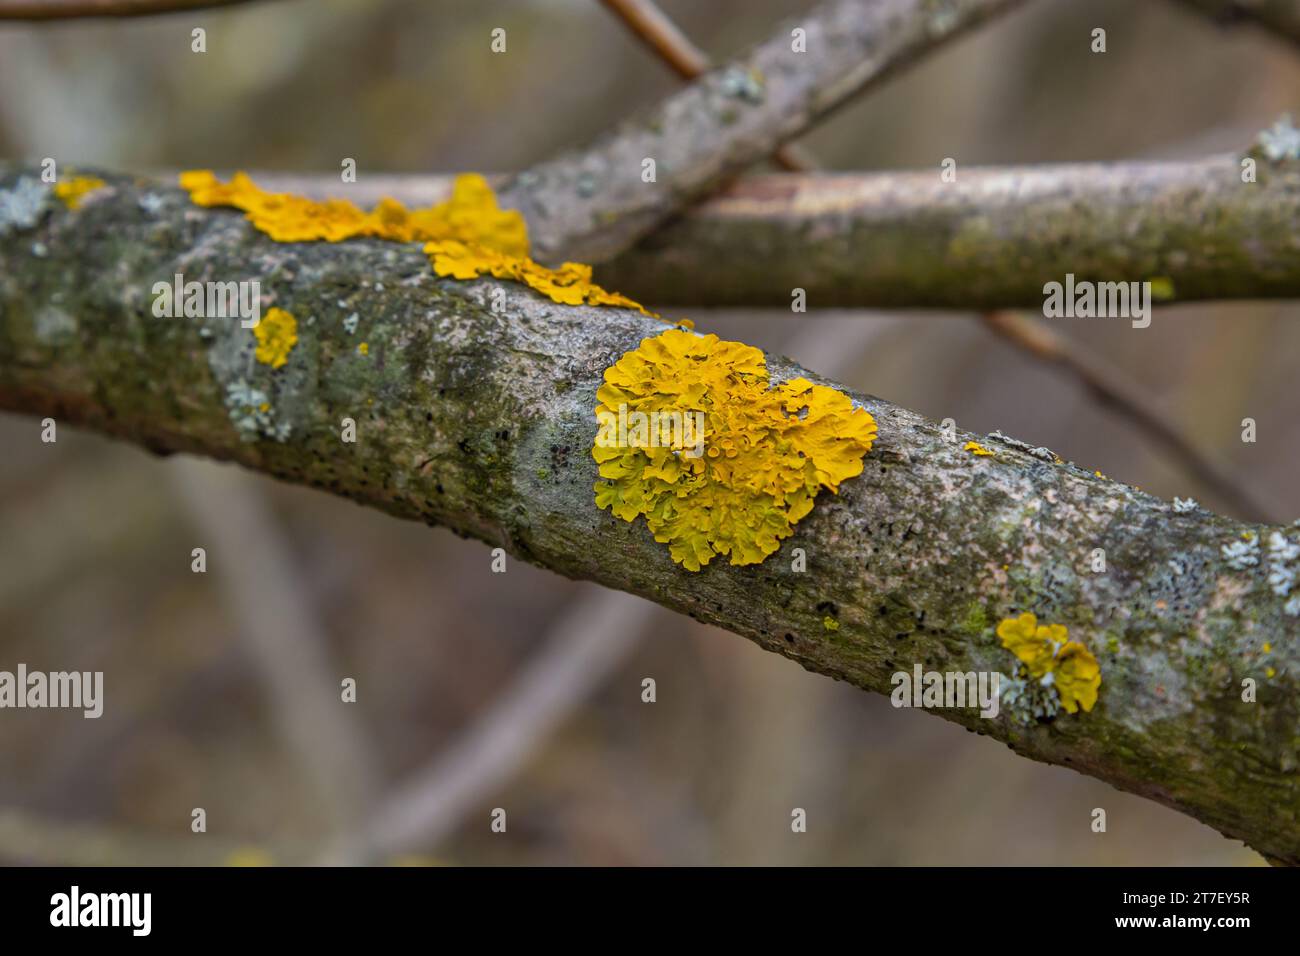 Xanthoria parietina, common orange lichen, yellow scale, maritime sunburst lichen and shore lichen, on the bark of tree branch. Thin dry branch with o Stock Photo